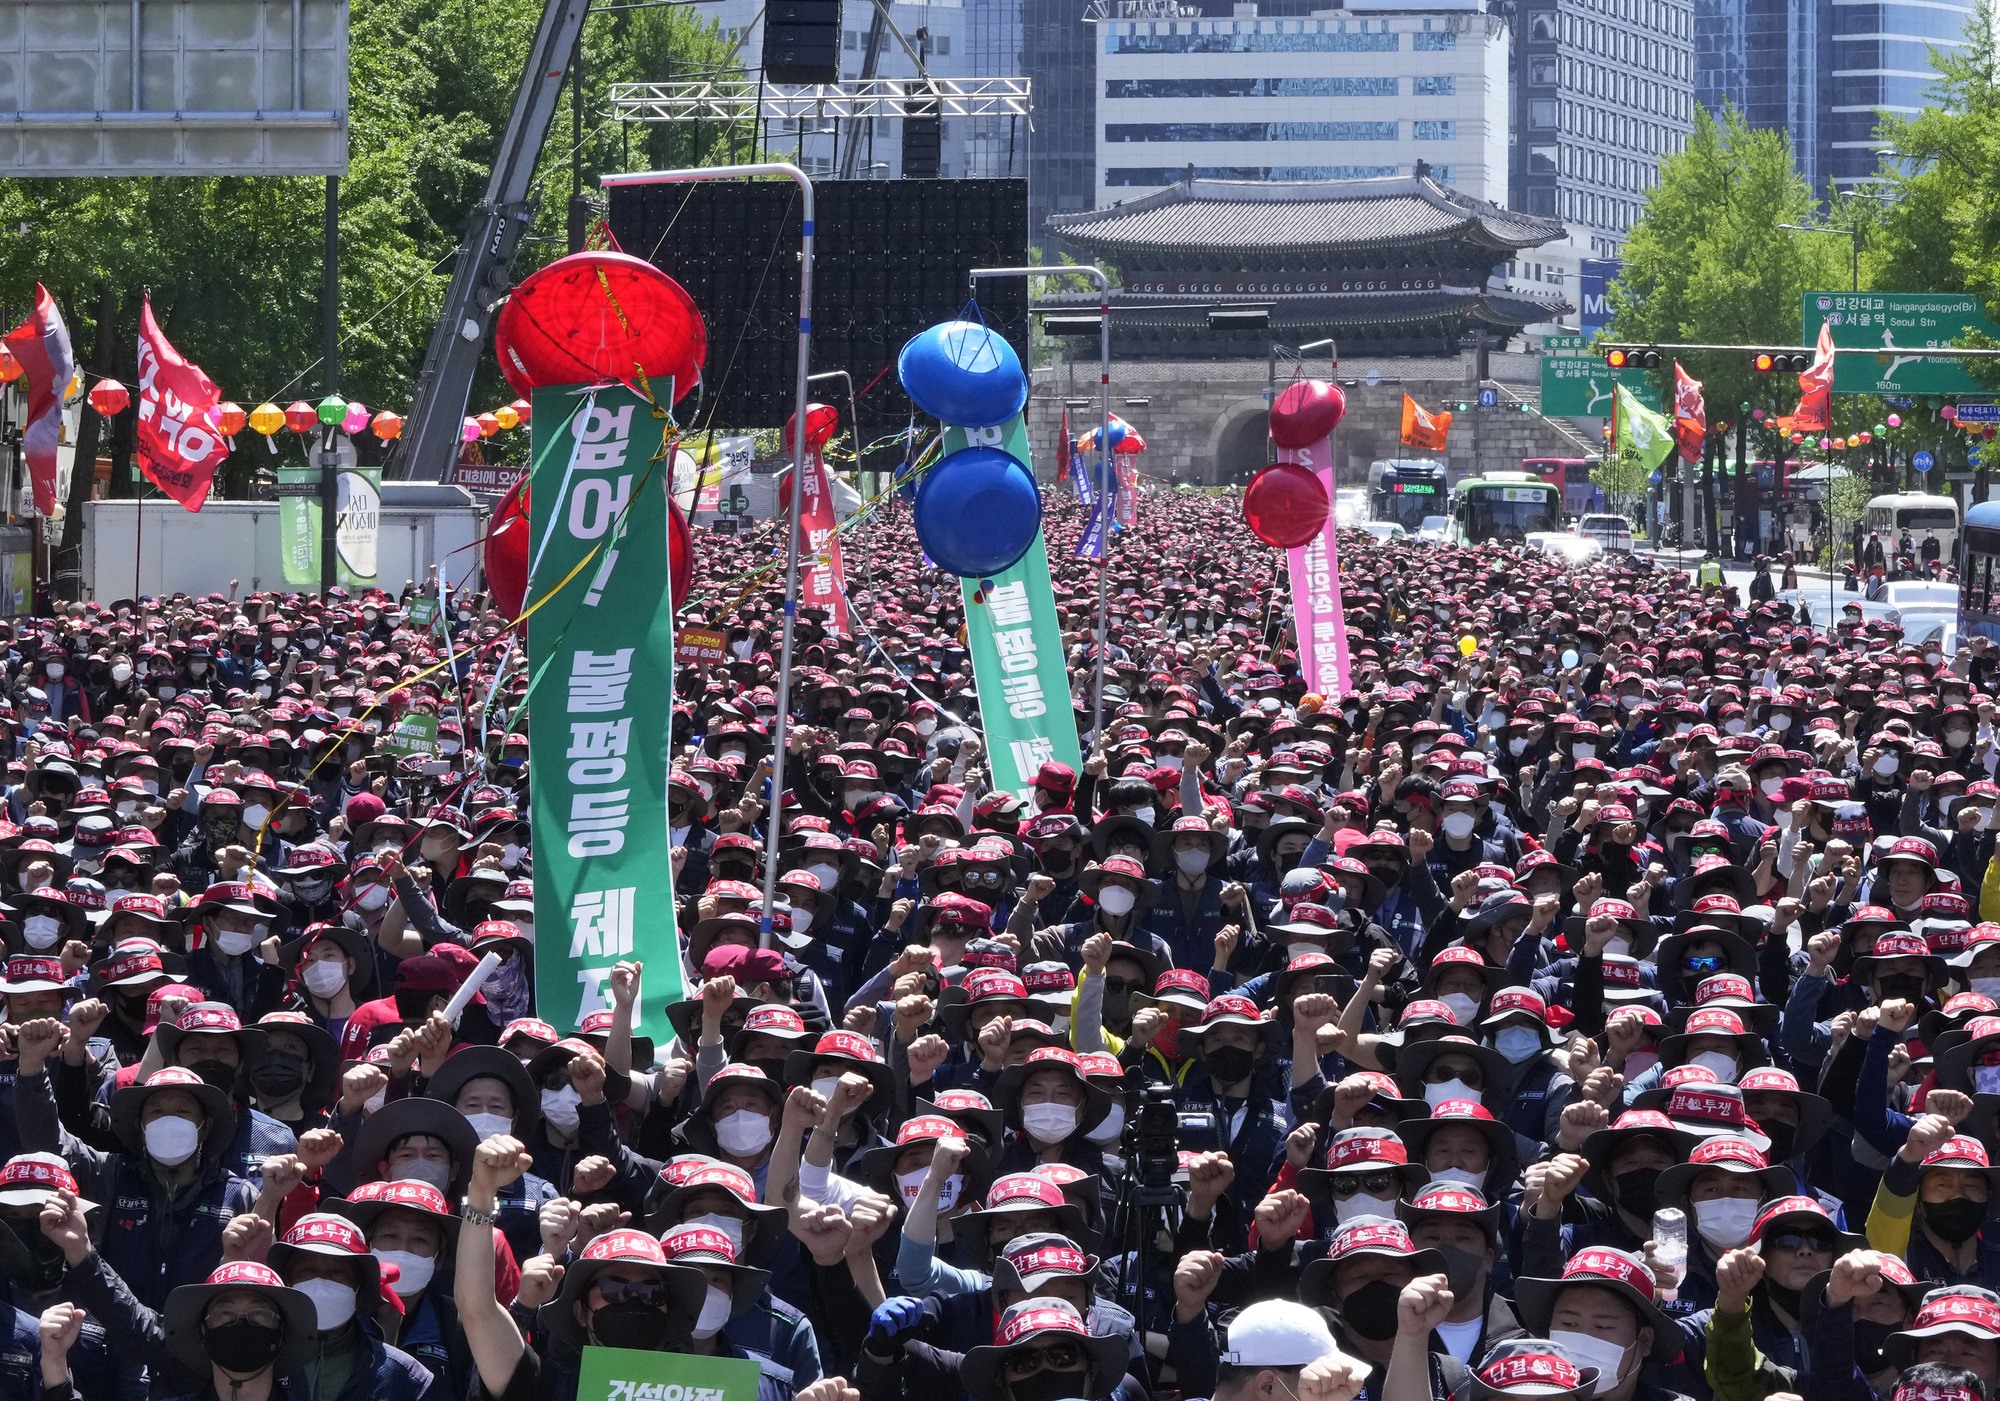 Các thành viên của Liên đoàn Công đoàn Hàn Quốc tổ chức cuộc biểu tình vào Ngày tháng Năm yêu cầu điều kiện làm việc tốt hơn và quyền lao động ở Seoul, Hàn Quốc. Ảnh: AP